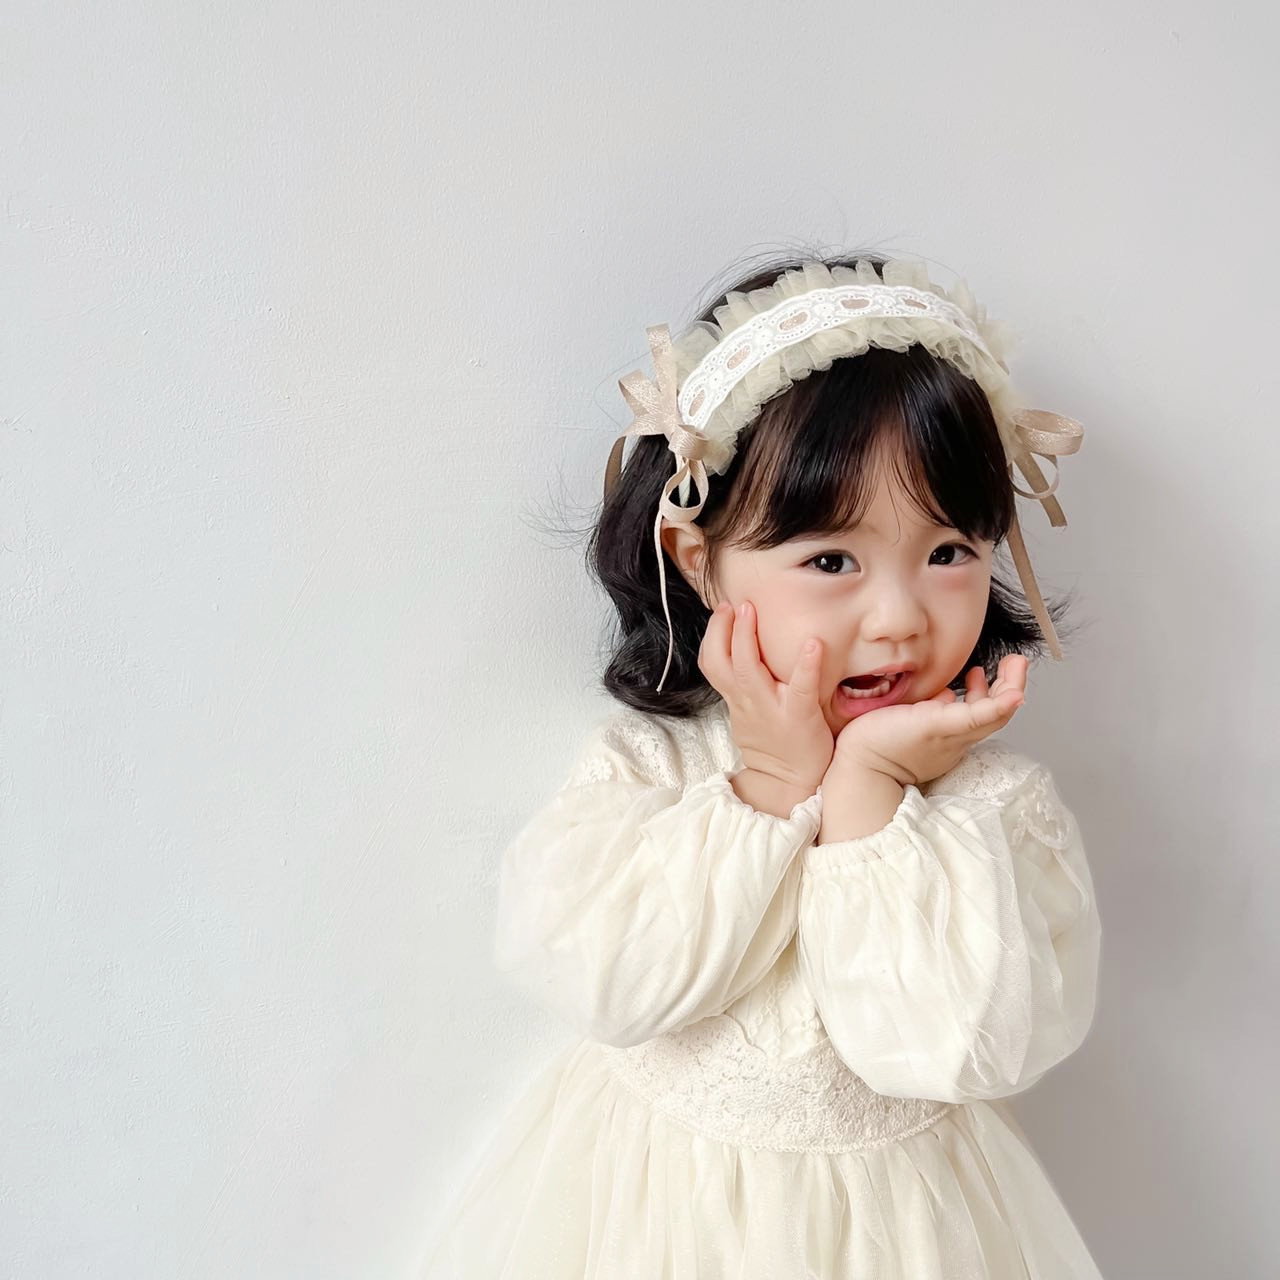 新款韩版复古蕾丝网纱lolita风儿童可爱发箍女童头扣发卡发饰头饰